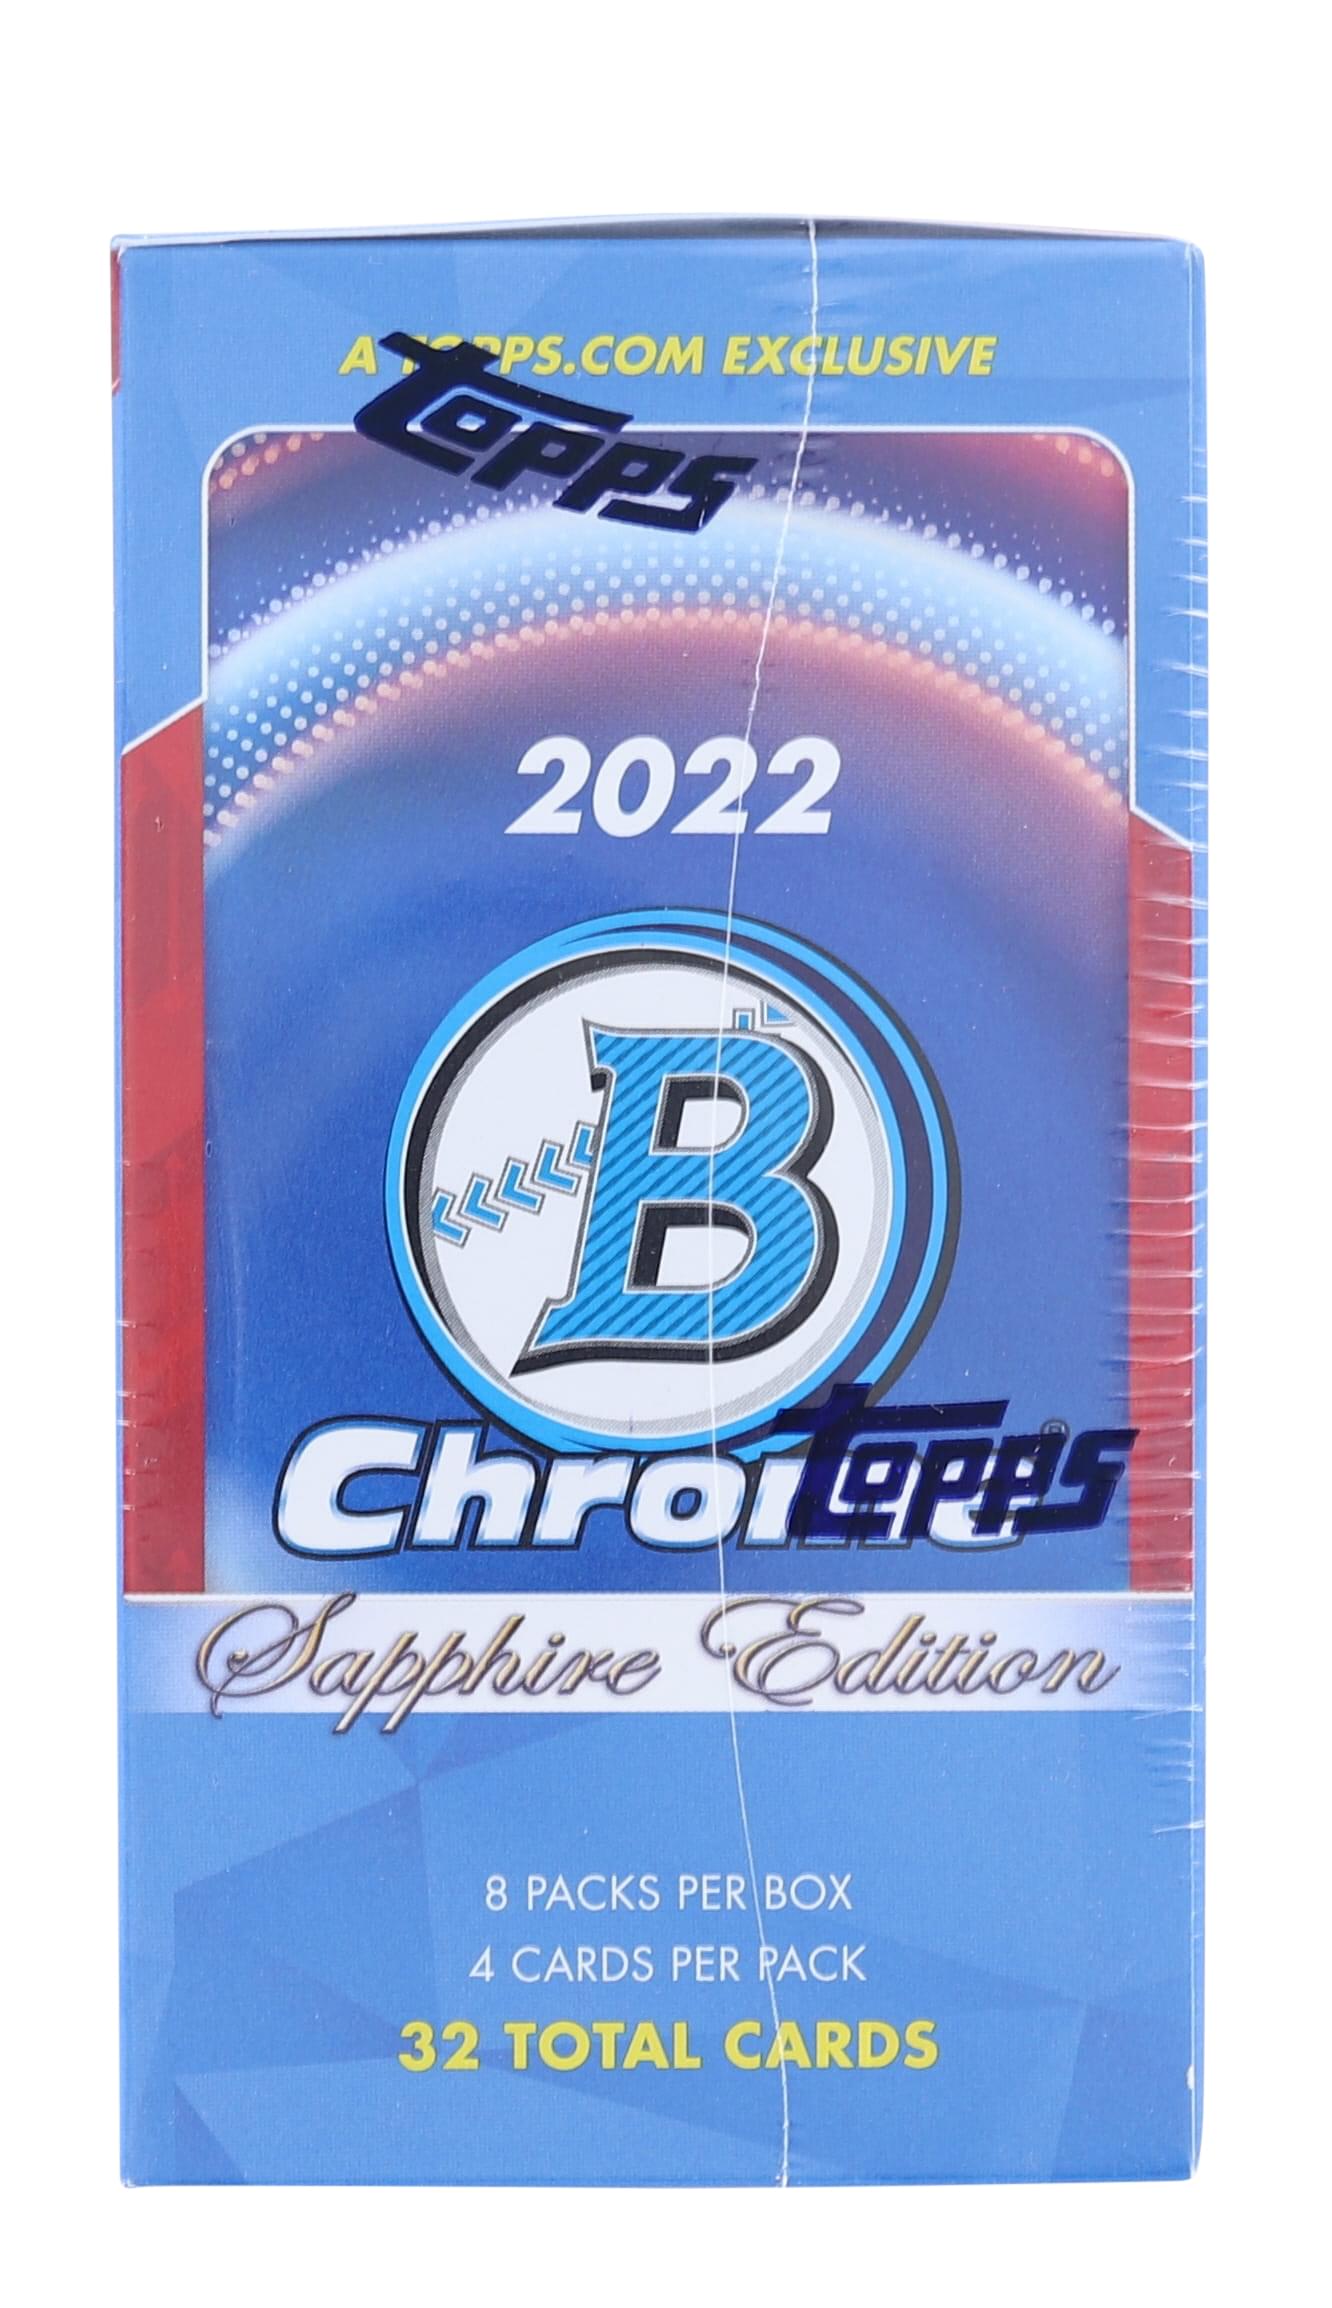 MLB 2022 Bowman Chrome Sapphire